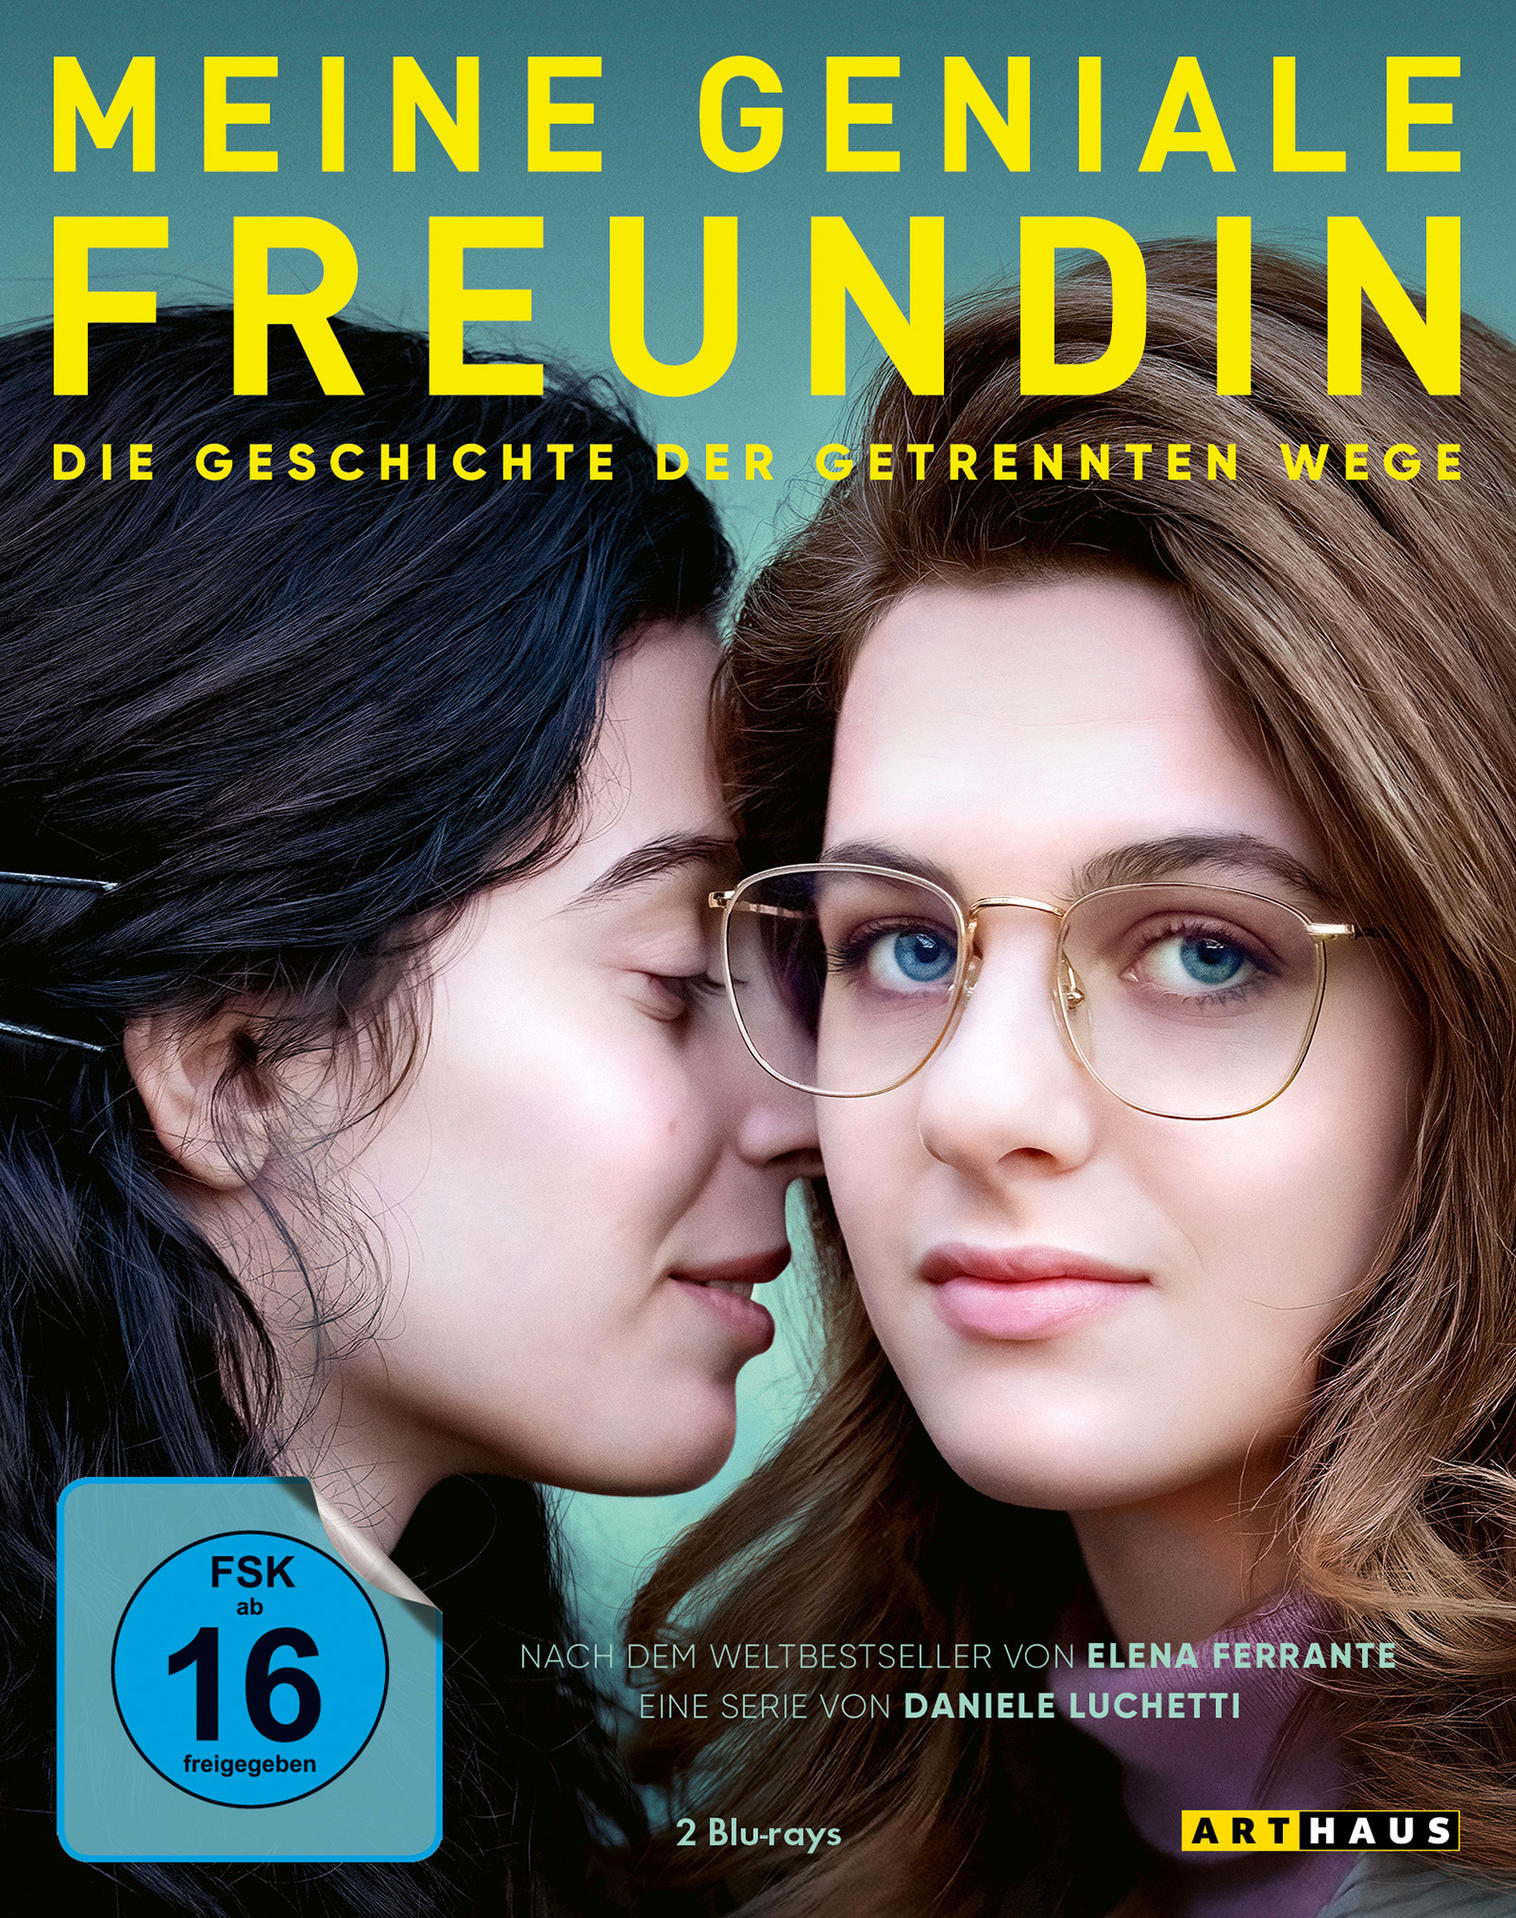 der Geschichte geniale getrennten Wege - Freundin 3 Die Meine Blu-ray Staffel -